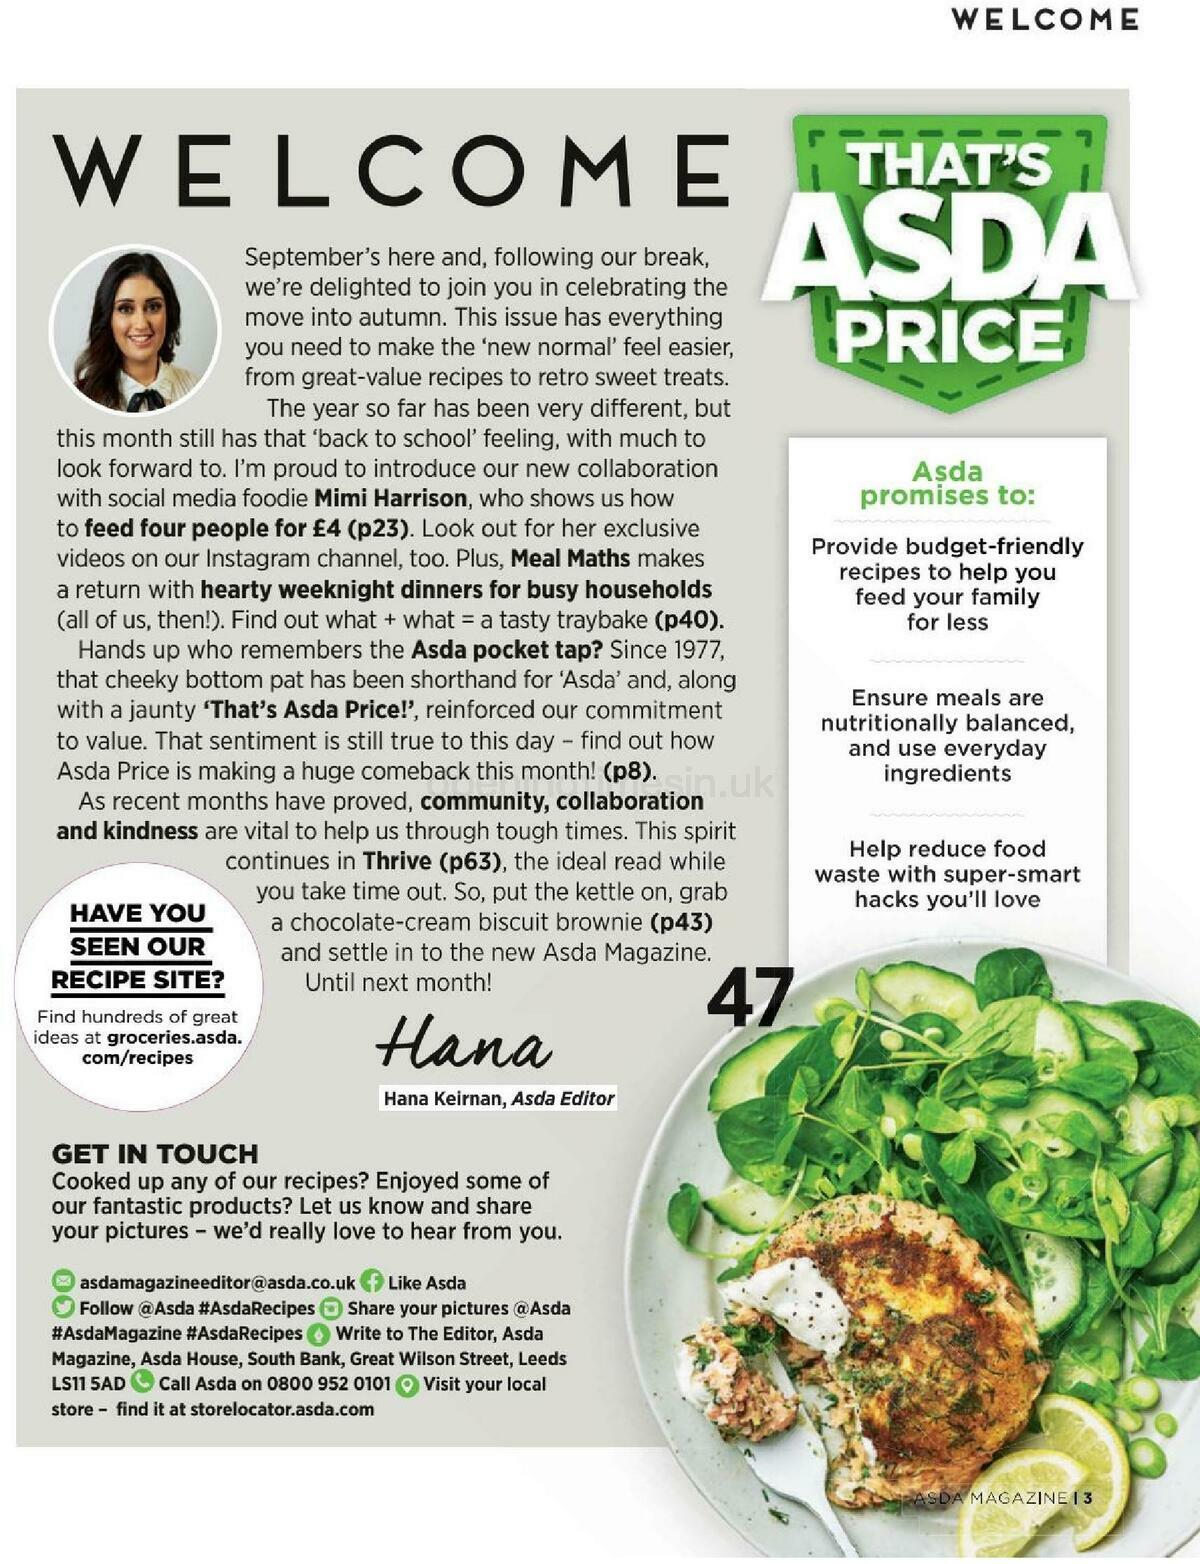 ASDA Magazine September Offers from 1 September